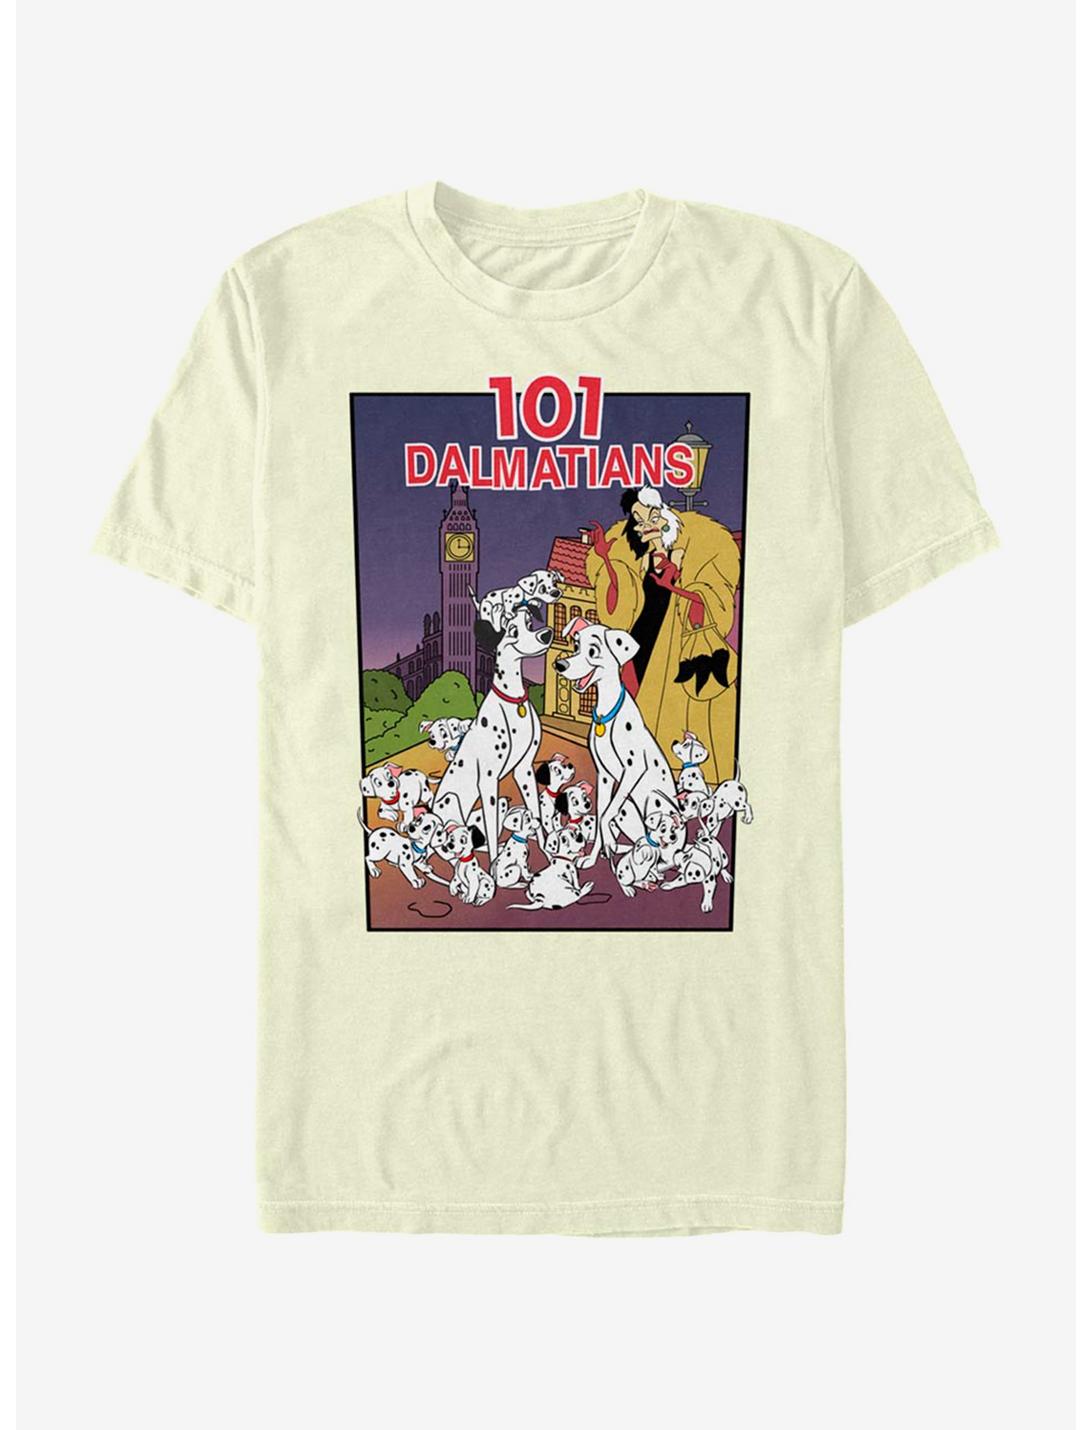 Disney 101 Dalmatians Vhs Cover T-Shirt, , hi-res